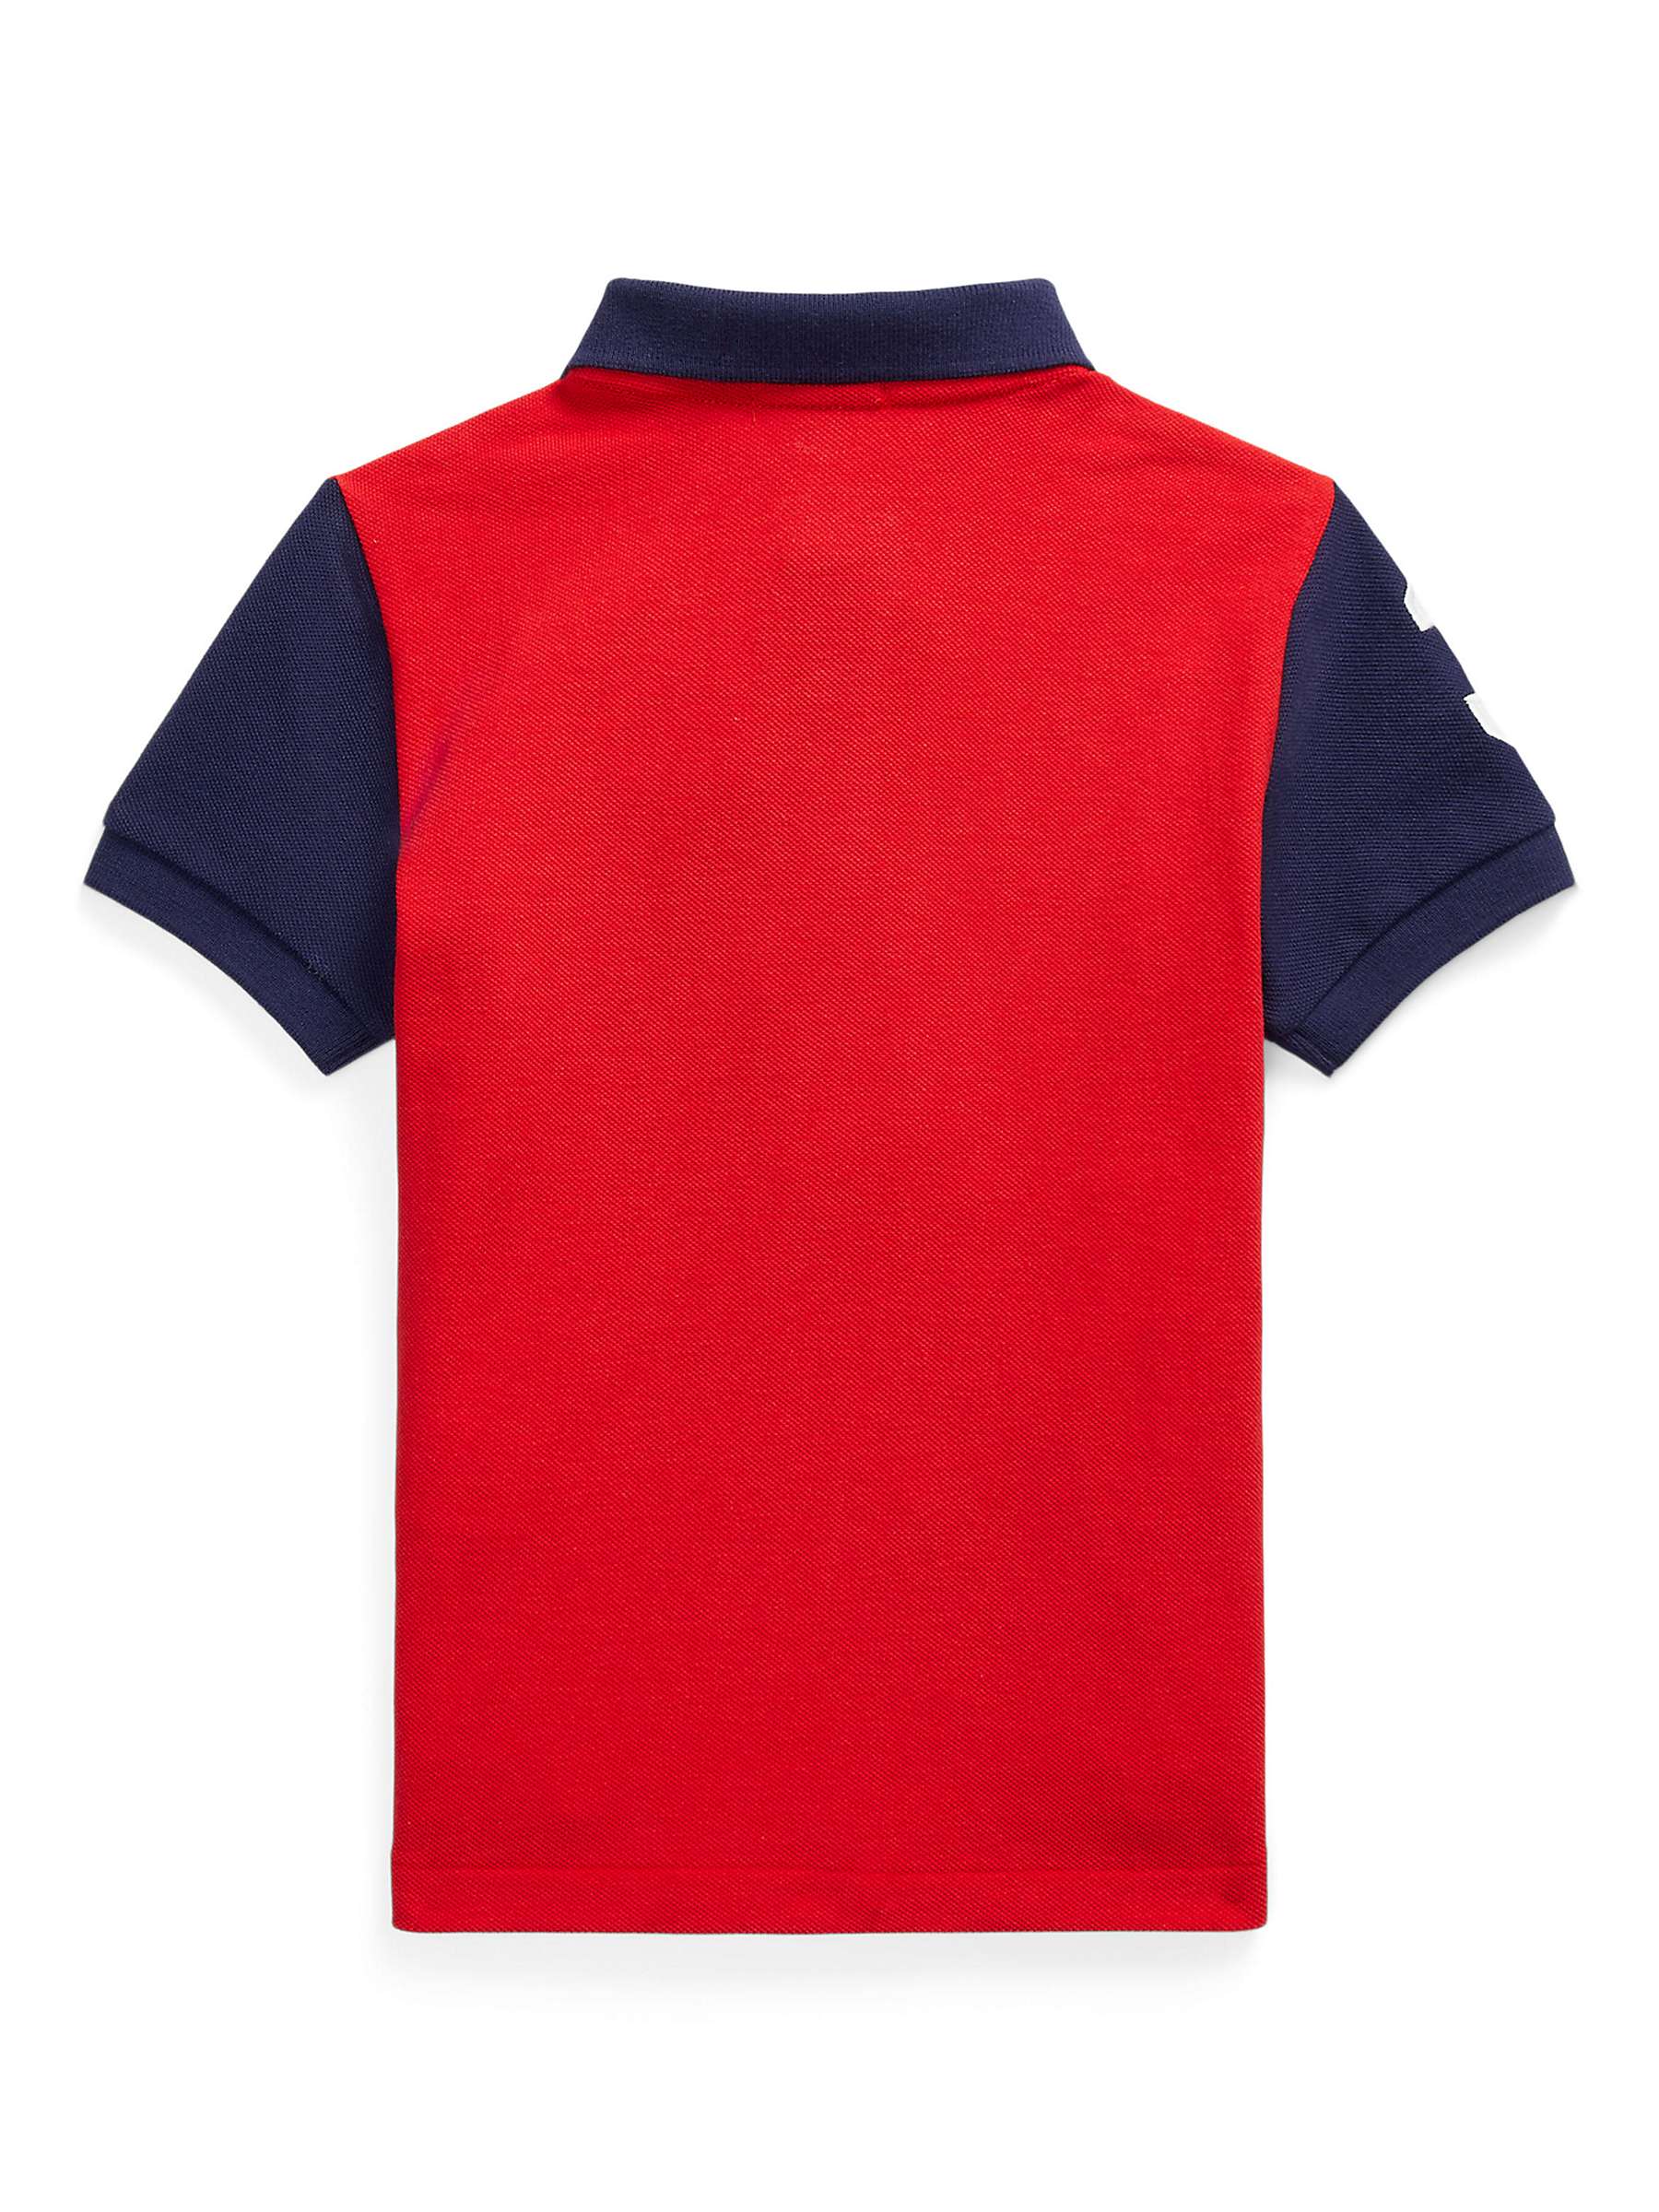 Ralph Lauren Kids' Cotton Mesh Polo Shirt, Red/Multi at John Lewis ...